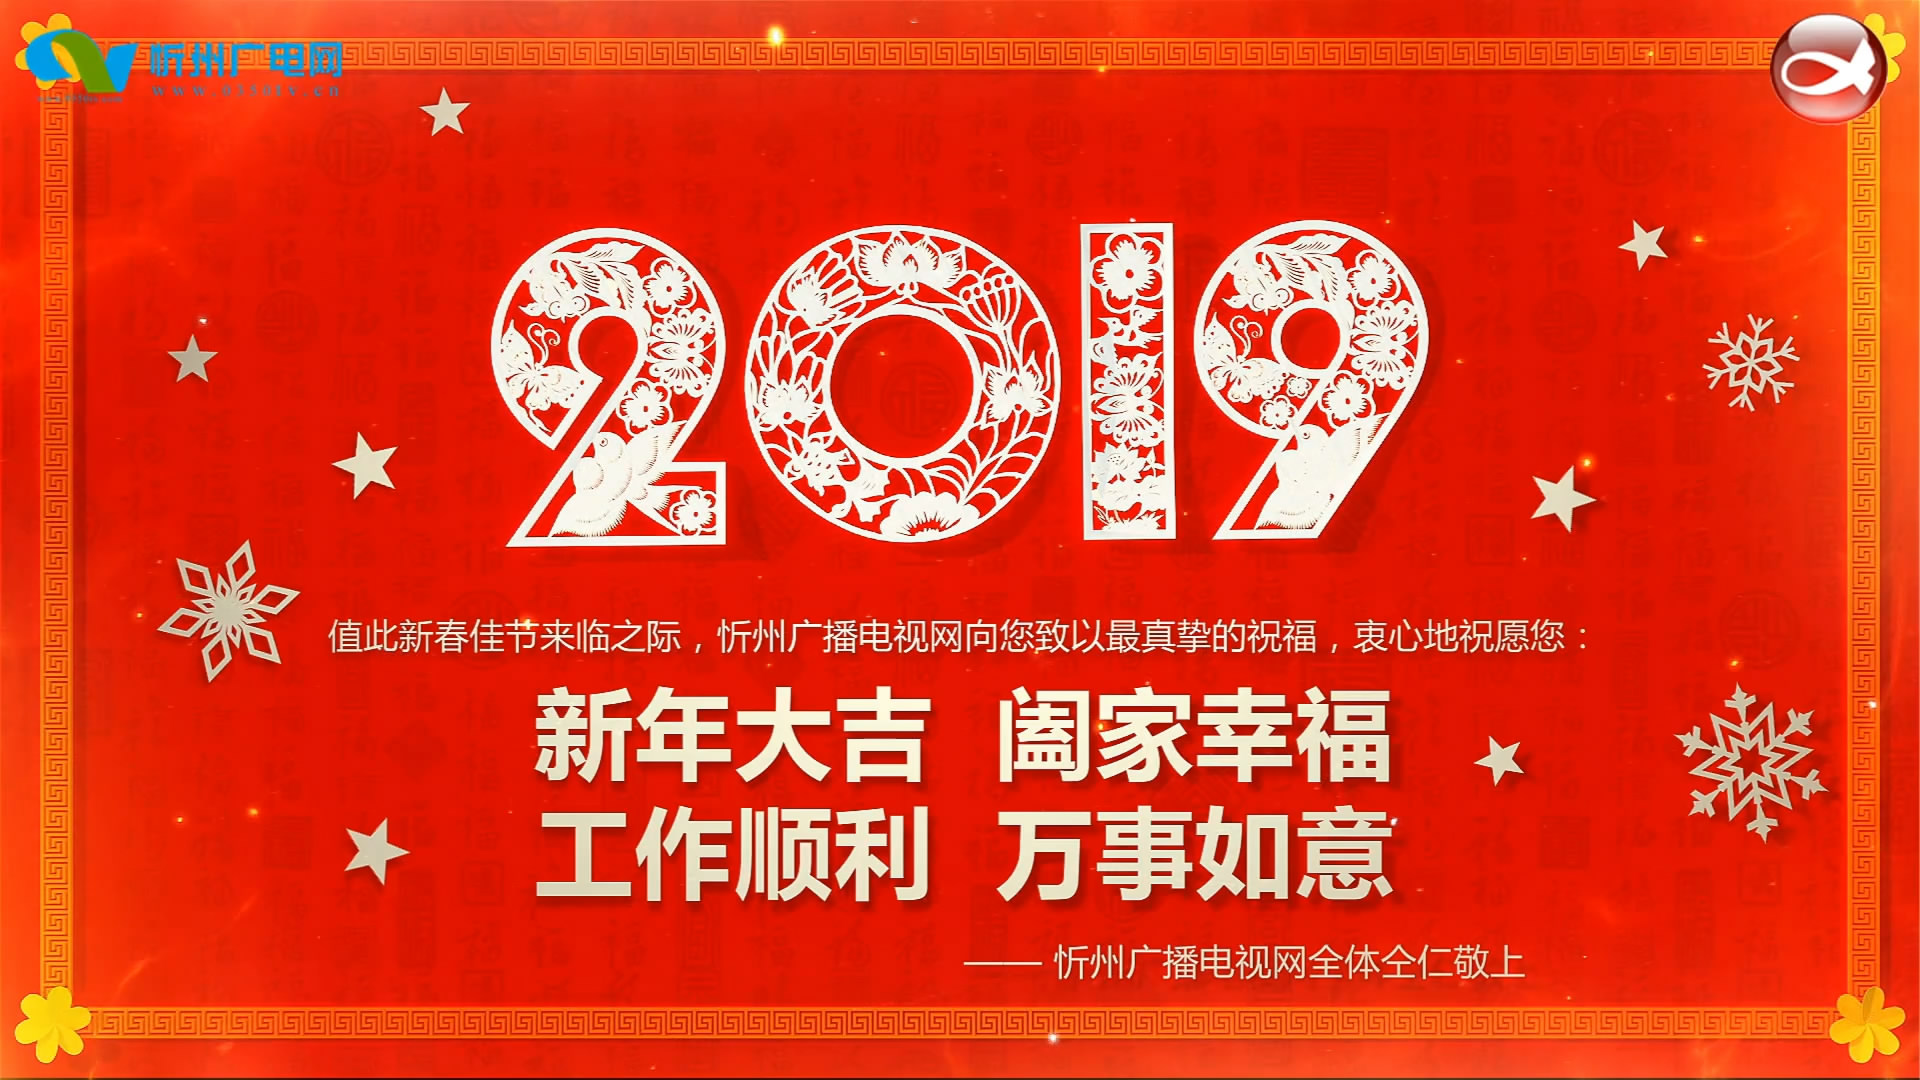 忻州广电网给全市人民拜年了！​